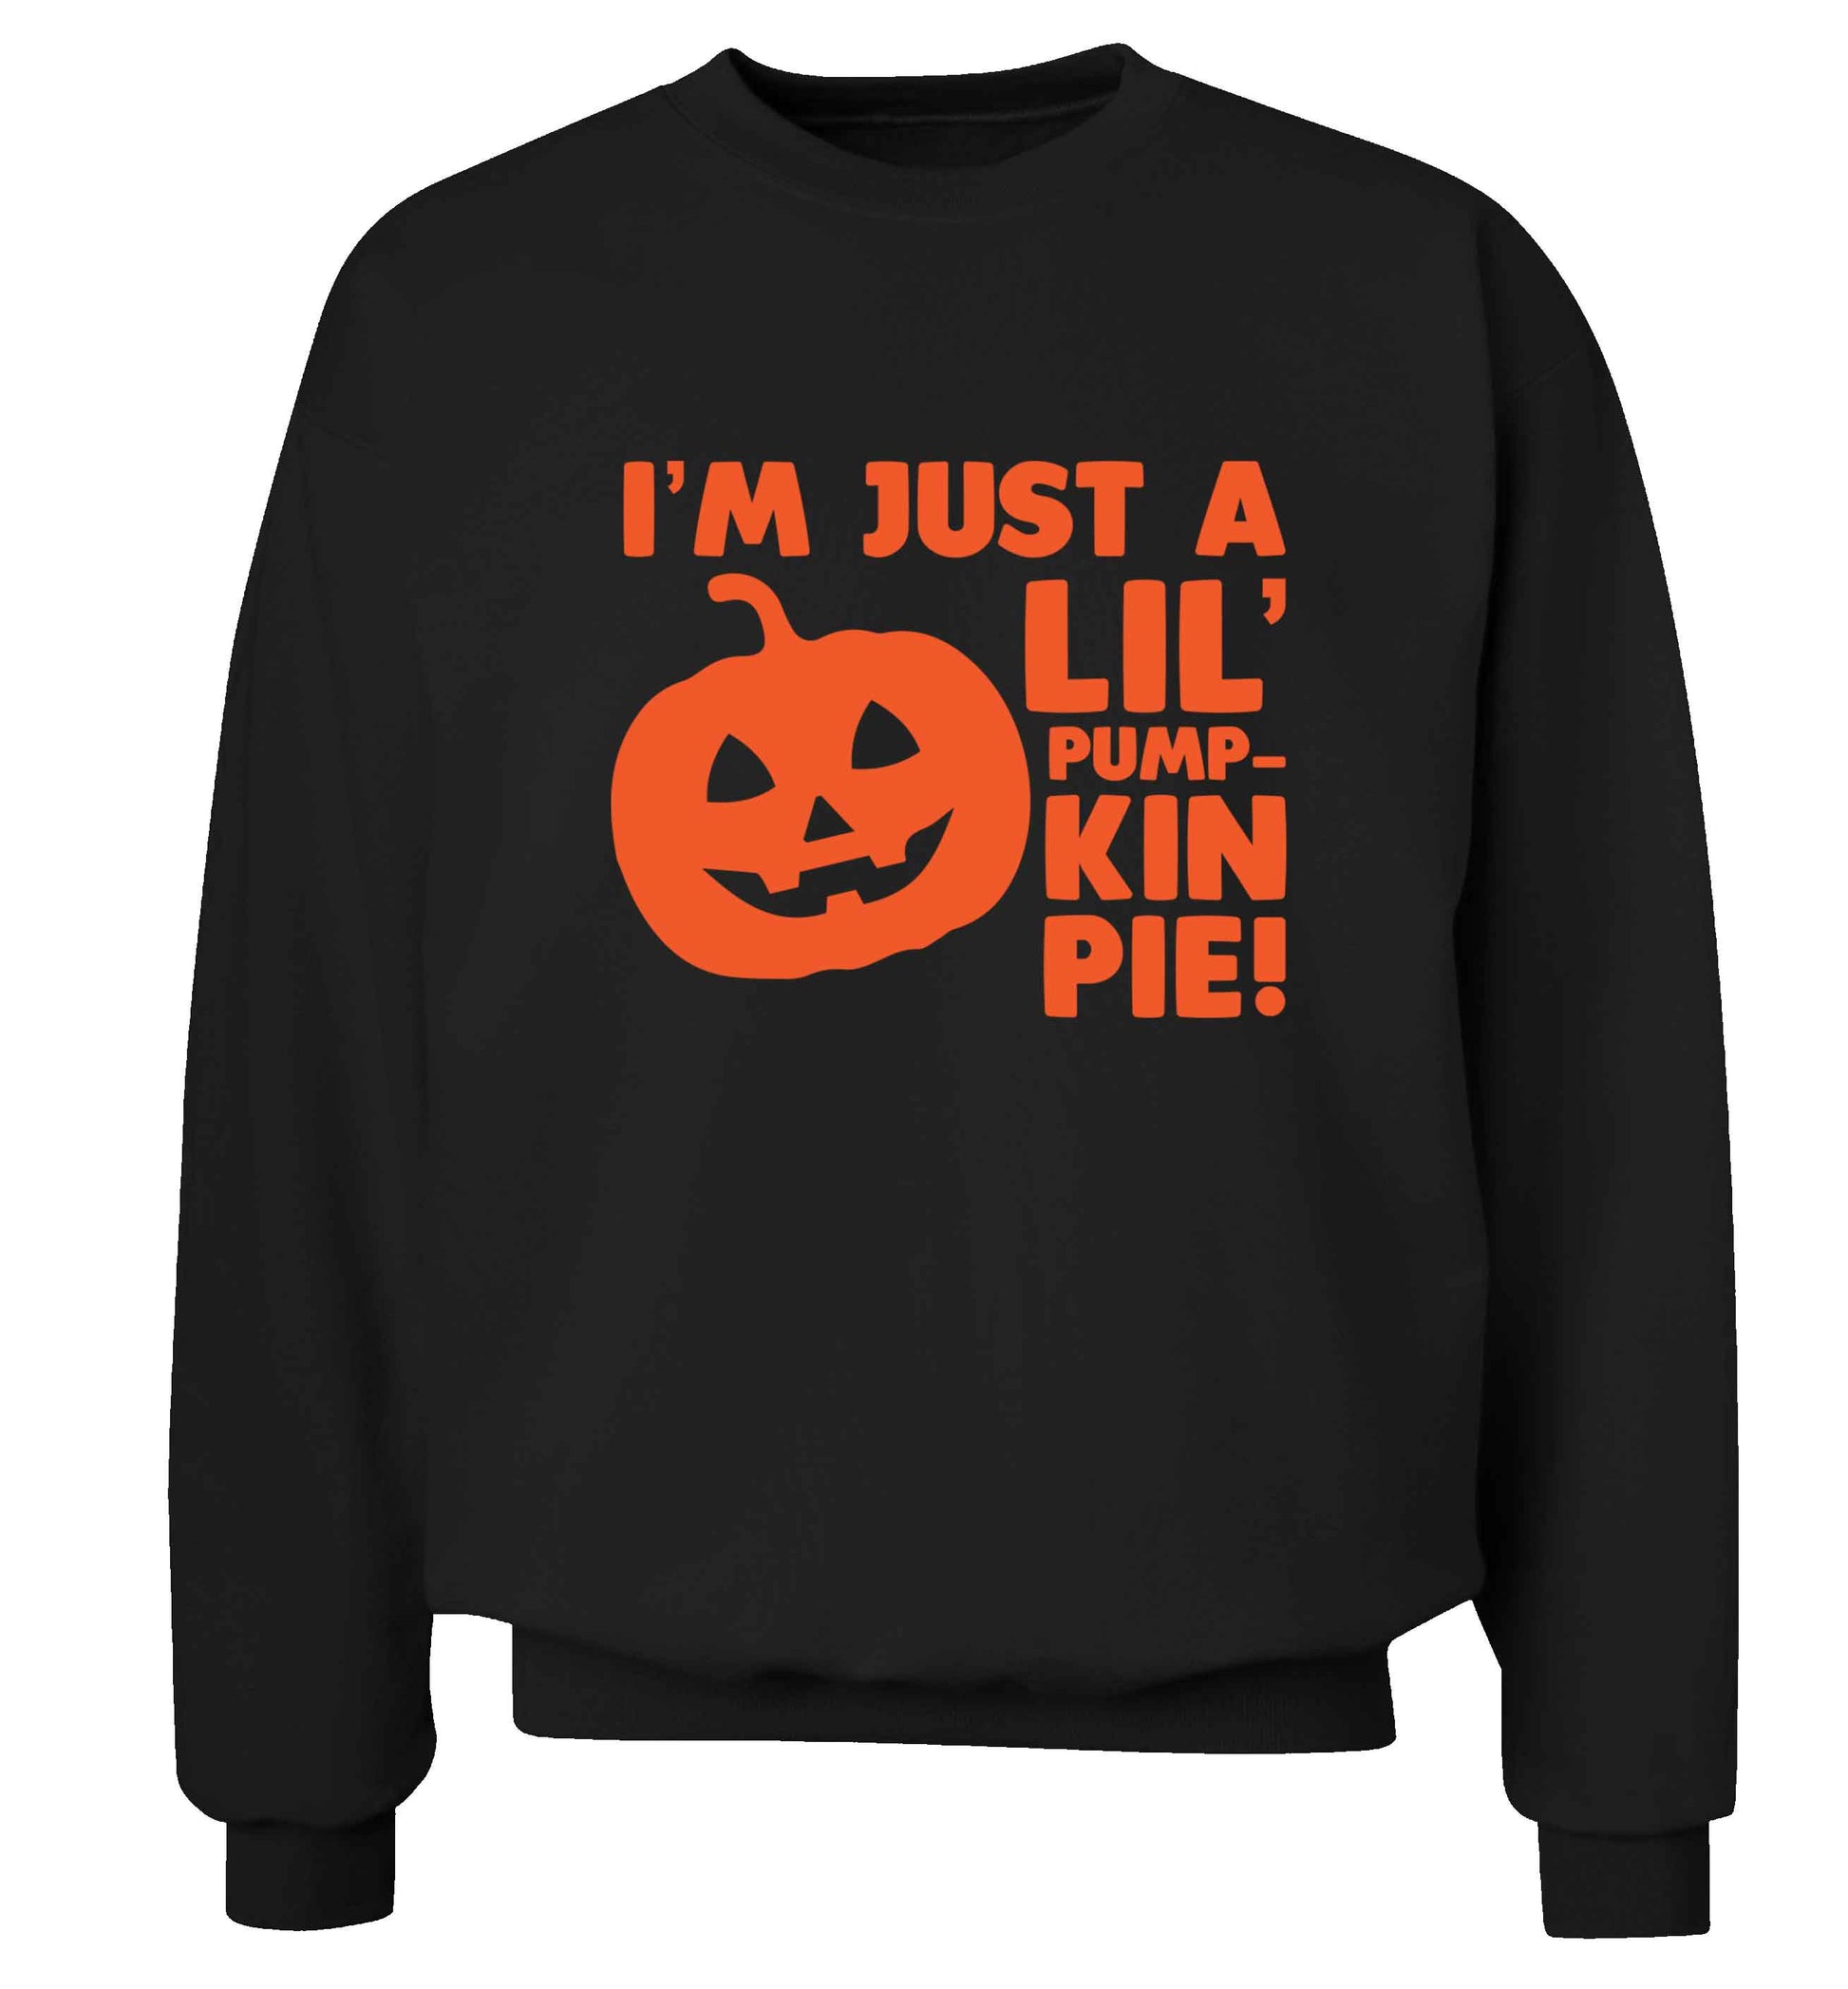 I'm just a lil' pumpkin pie adult's unisex black sweater 2XL